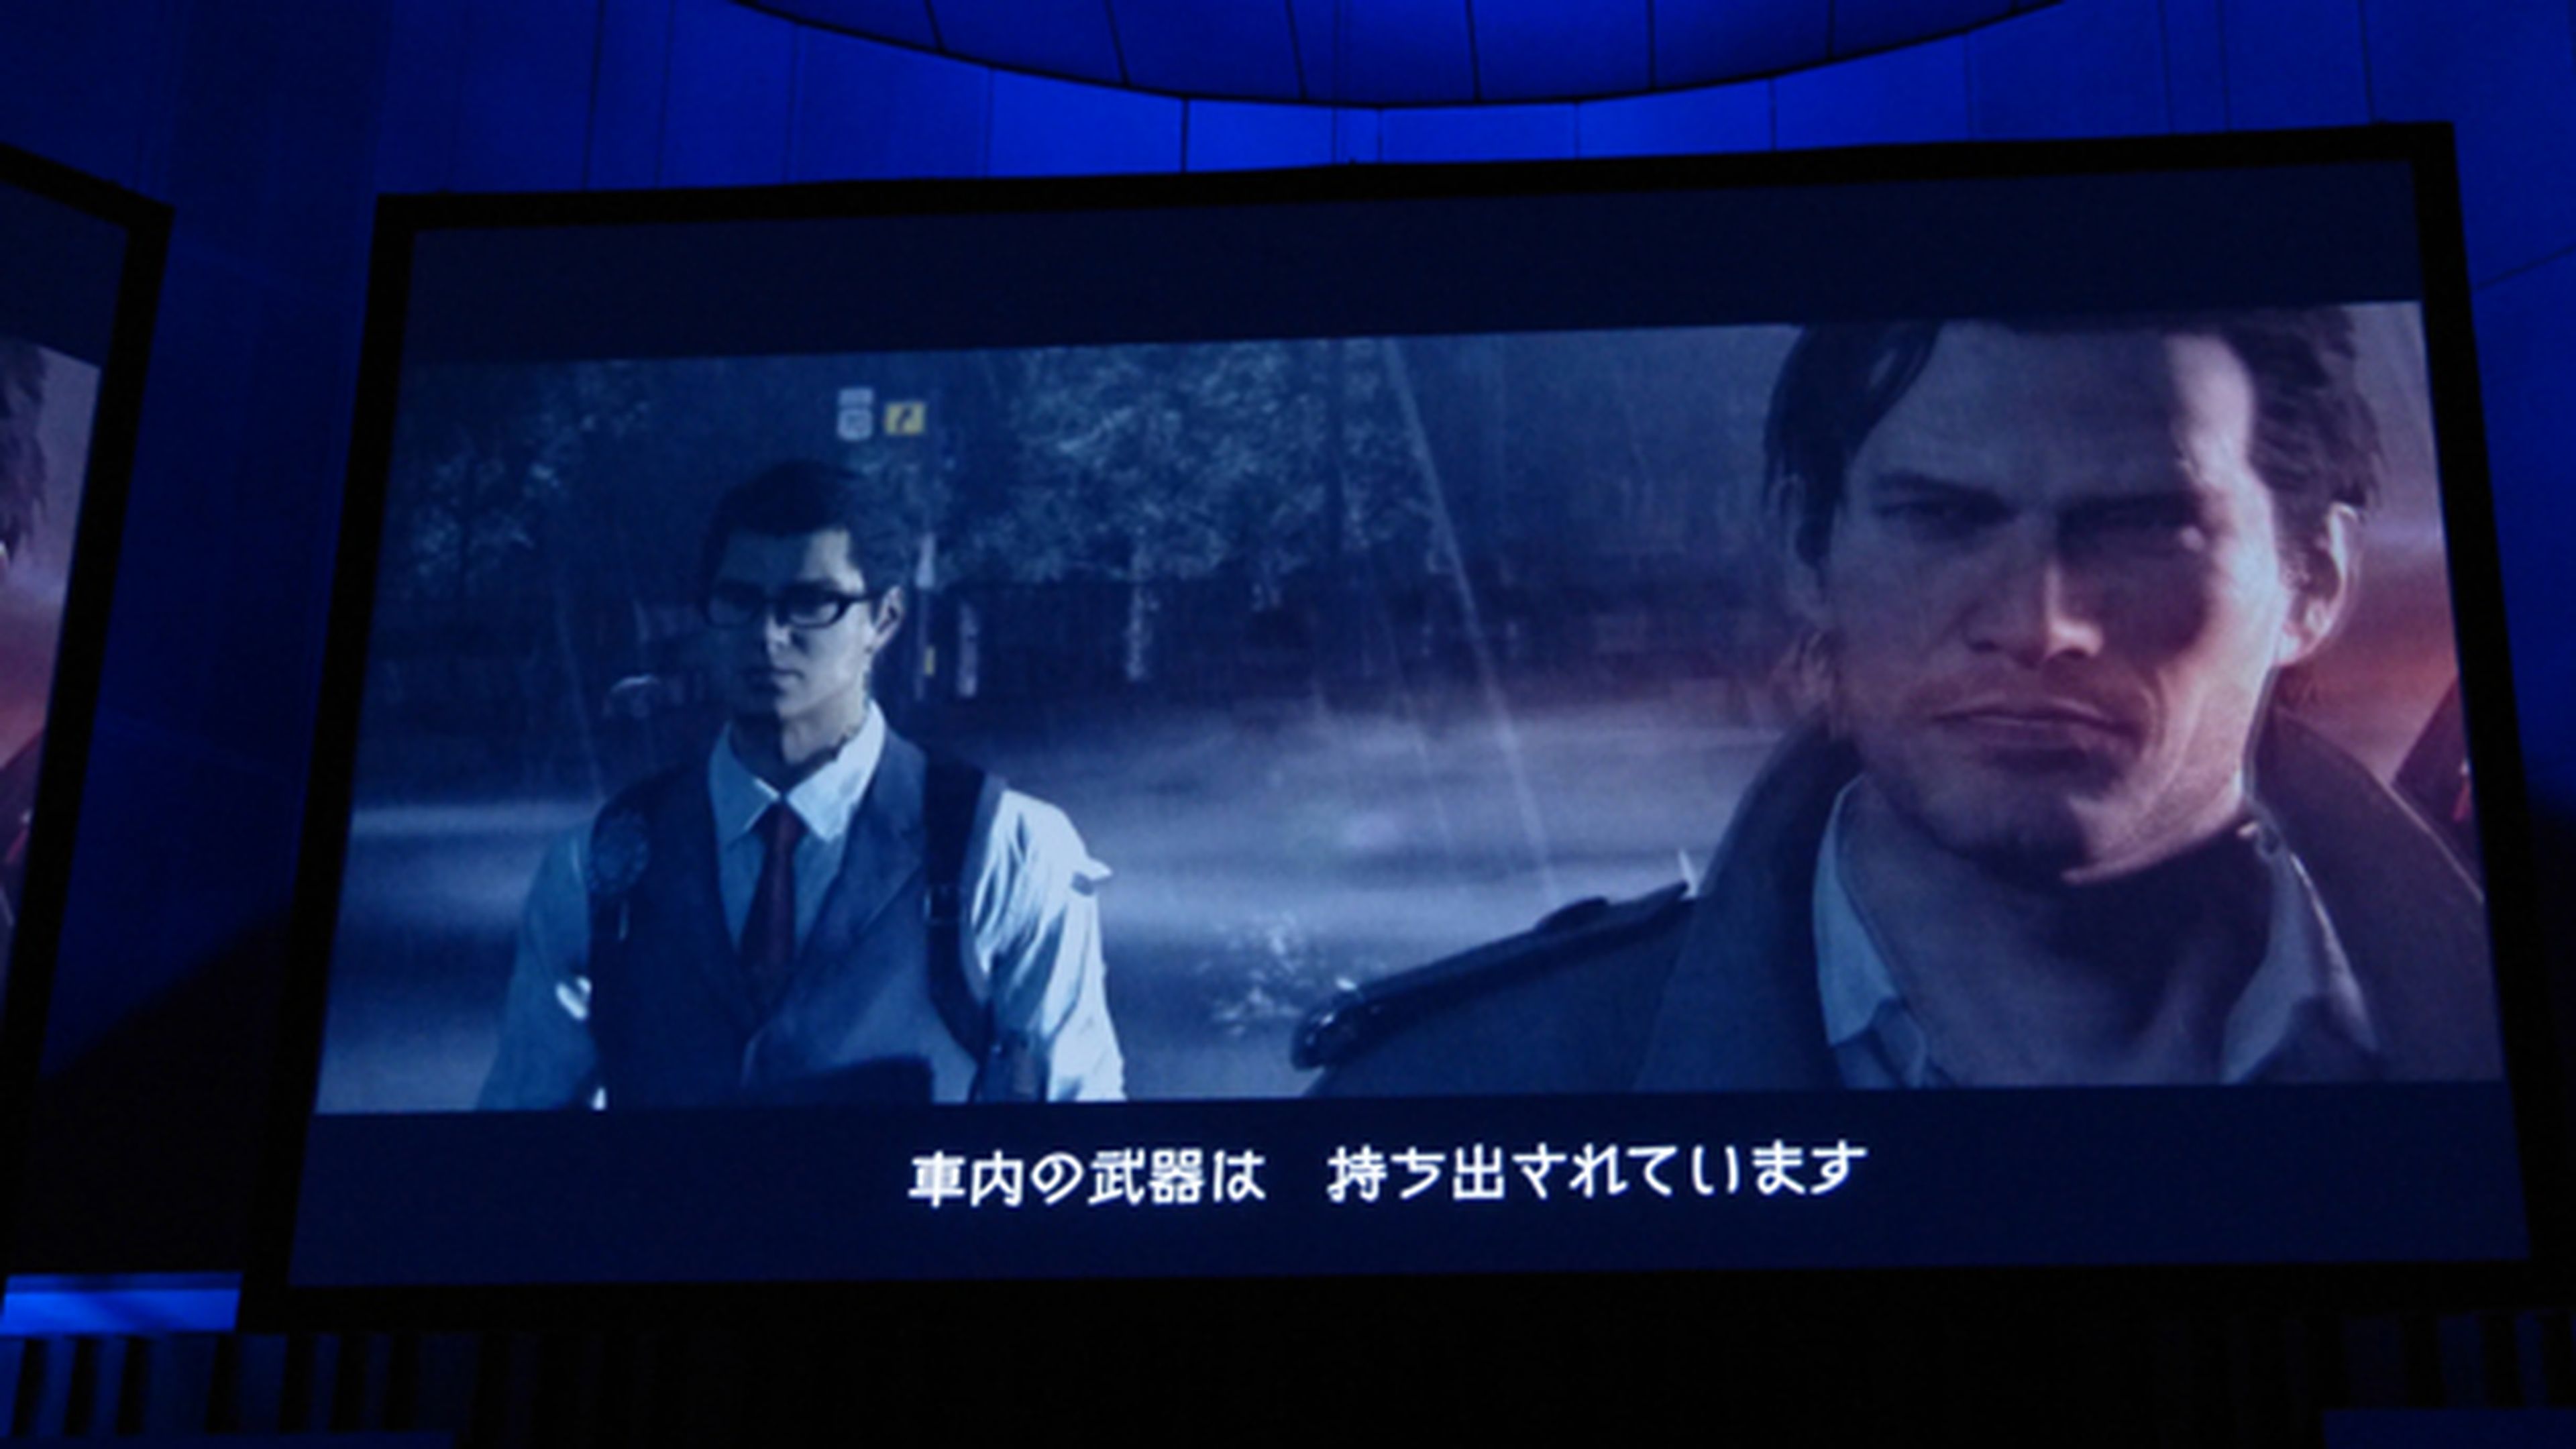 Conferencia de Sony: Impresiones desde Japón